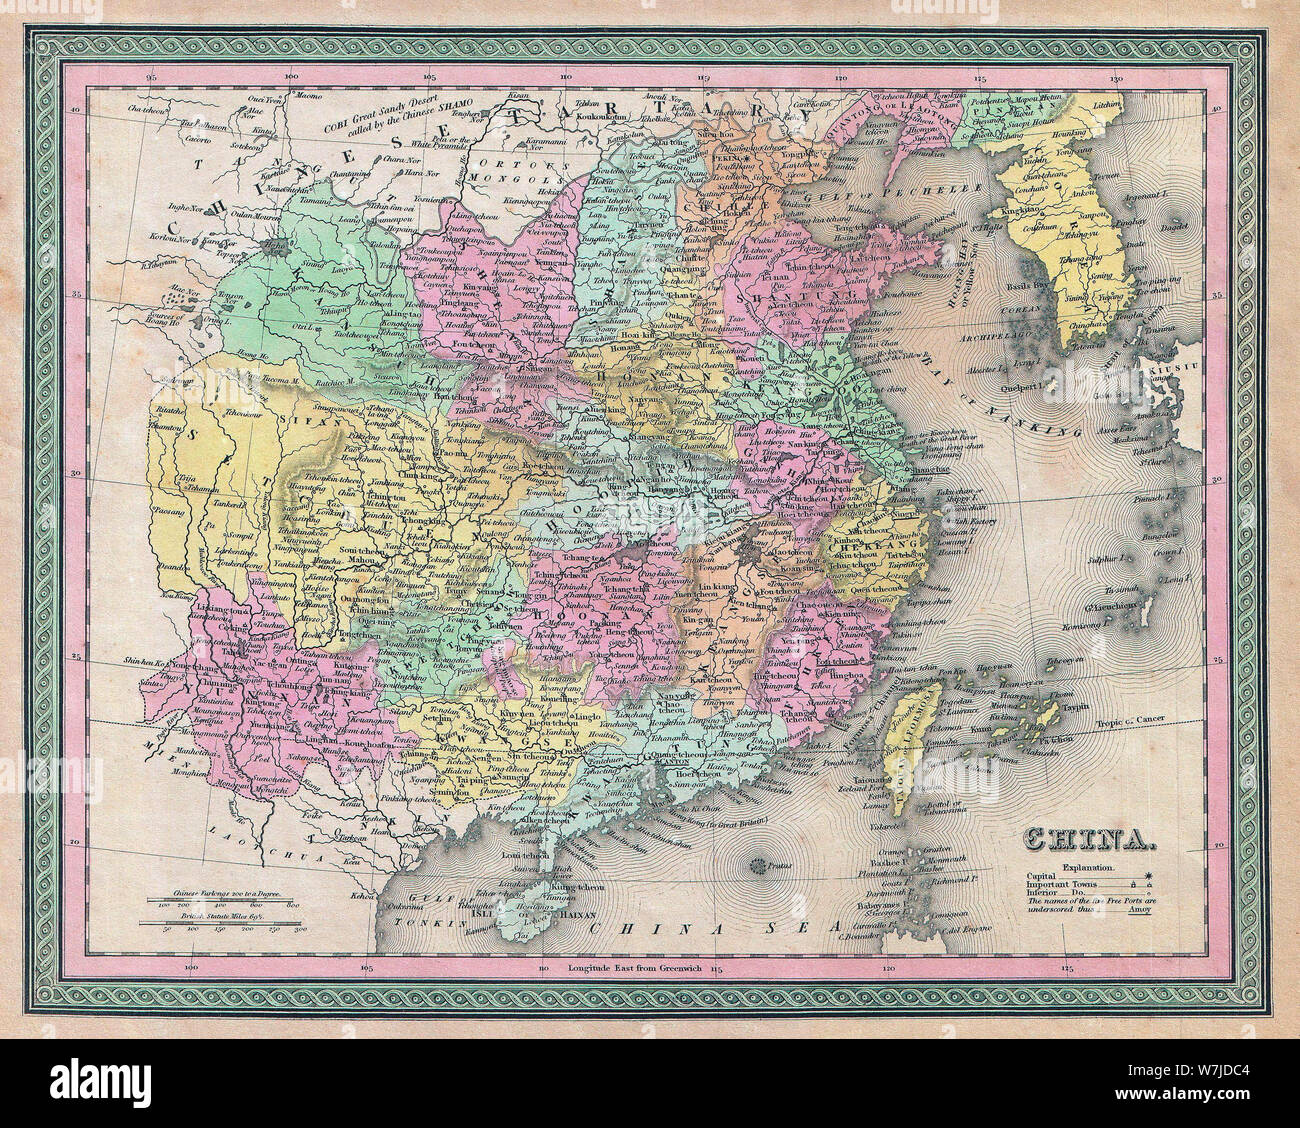 Karte von China - ein äußerst attraktives Beispiel für S. A. Mitchell Sr's Karte 1853 von China. Abdeckungen von Chinesischen Tartary zu Hainan im Süden und Osten bis Korea und Formosa. Chinesischen Provinzen sind farblich markiert und nummeriert. Durch die grüne Grenze gemeinsame zu Mitchell Karten aus den 1850s umgeben. Stockfoto